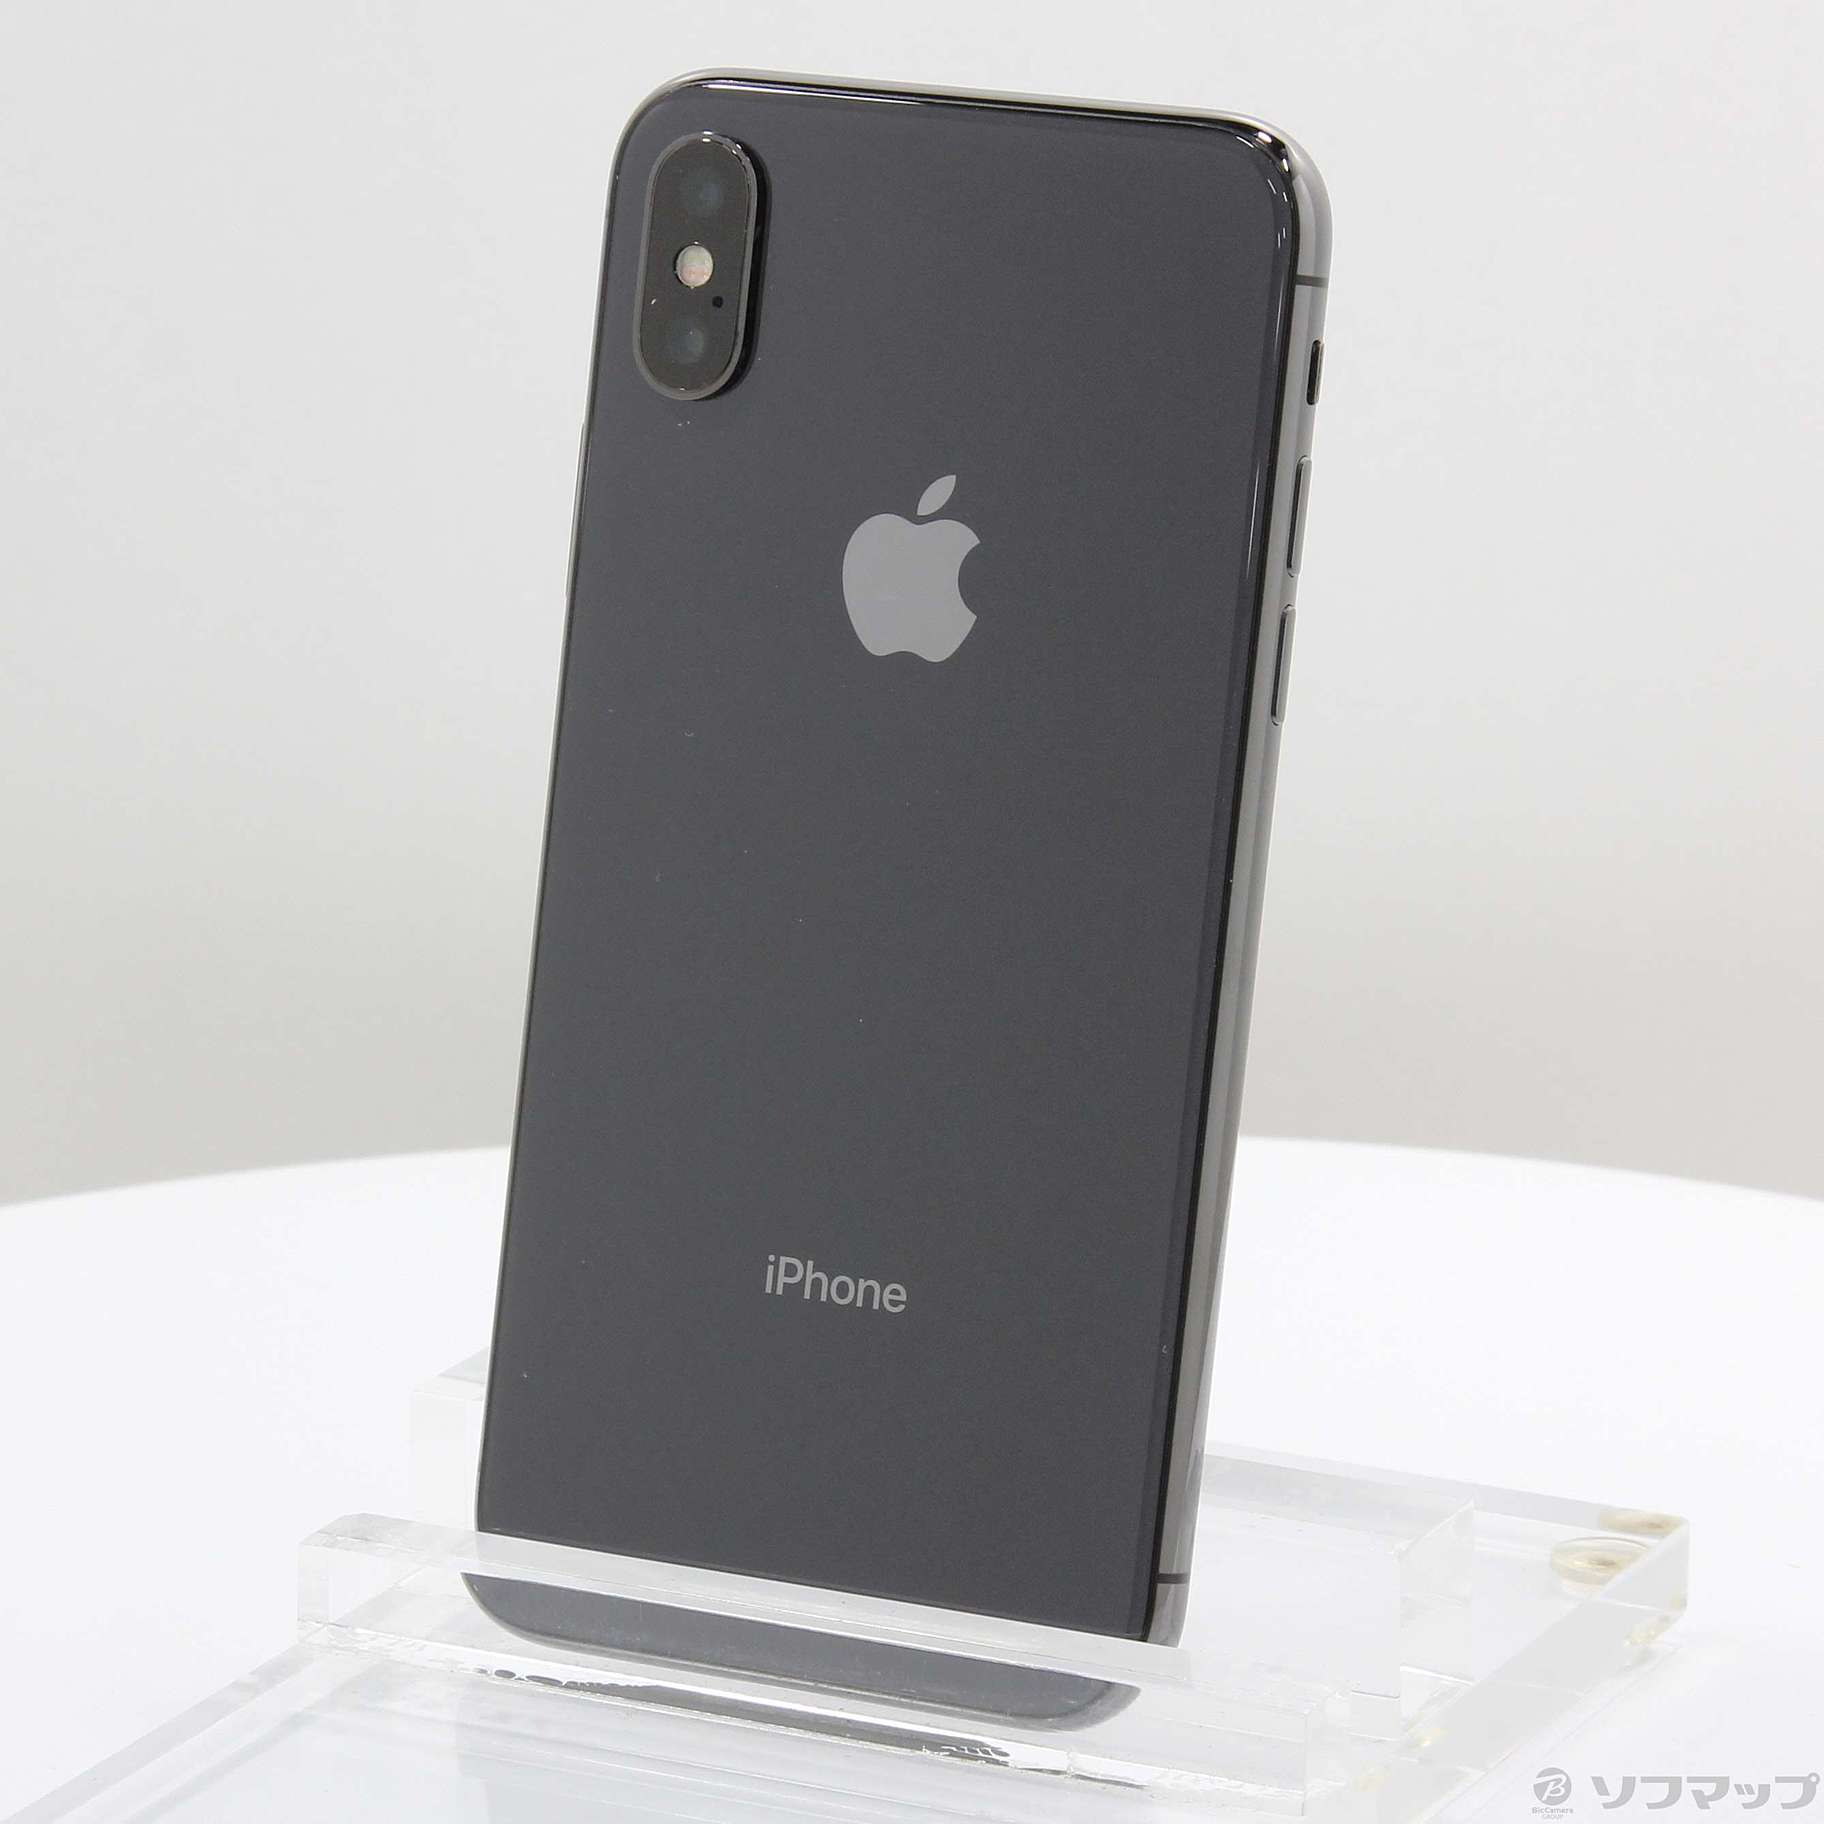 (中古)Apple iPhoneX 256GB スペースグレイ MQC12J/A SIMフリー(377-ud)